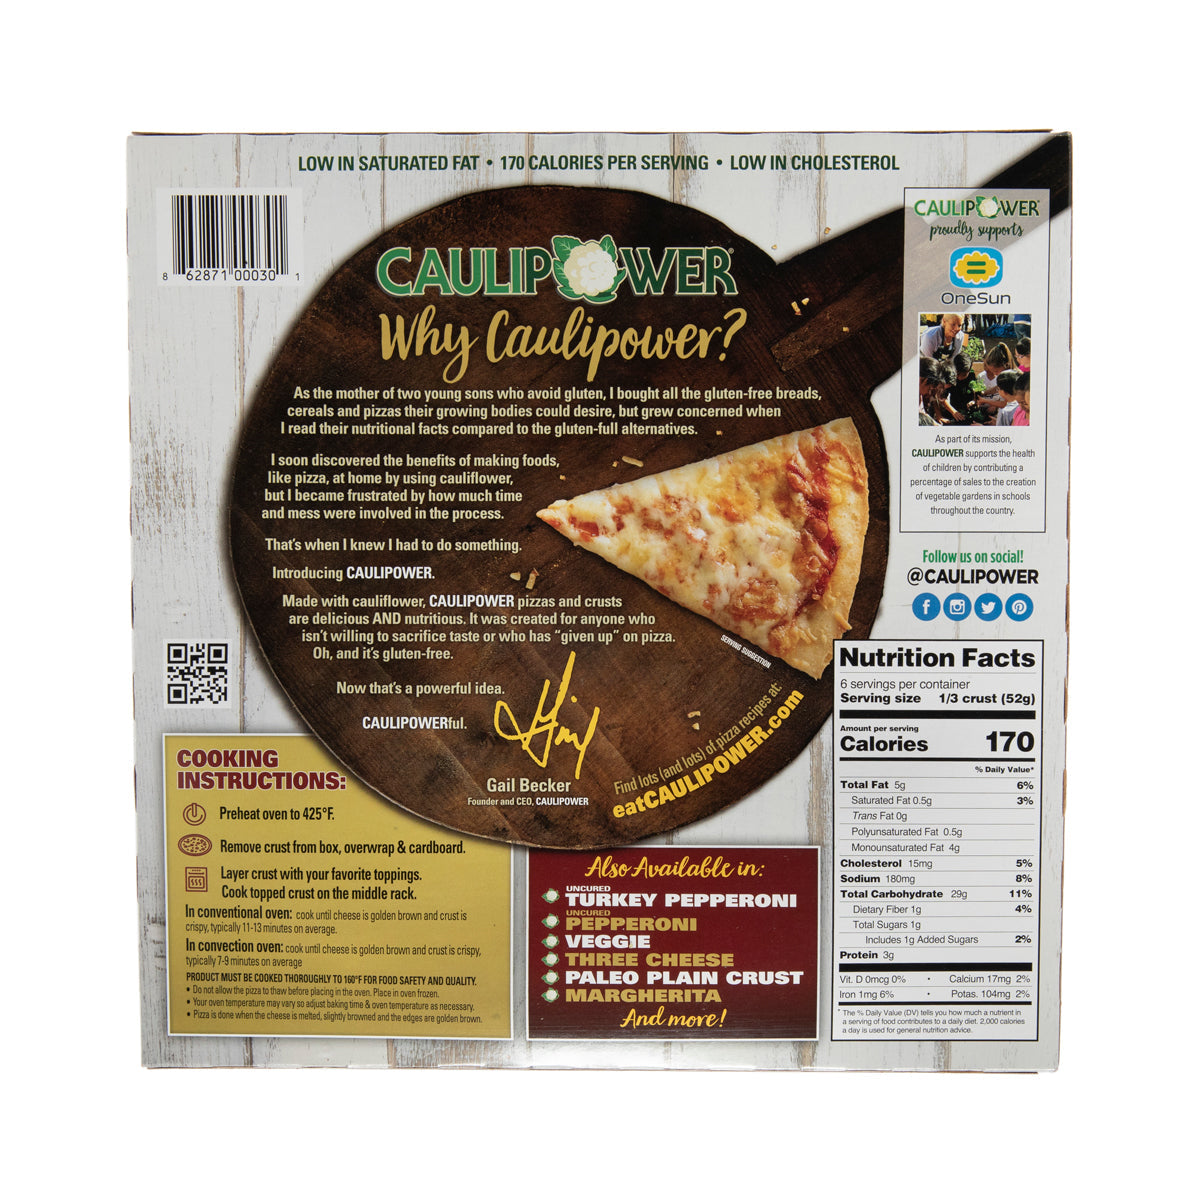 Caulipower 10 Califlower Pizza Crust 2 CT